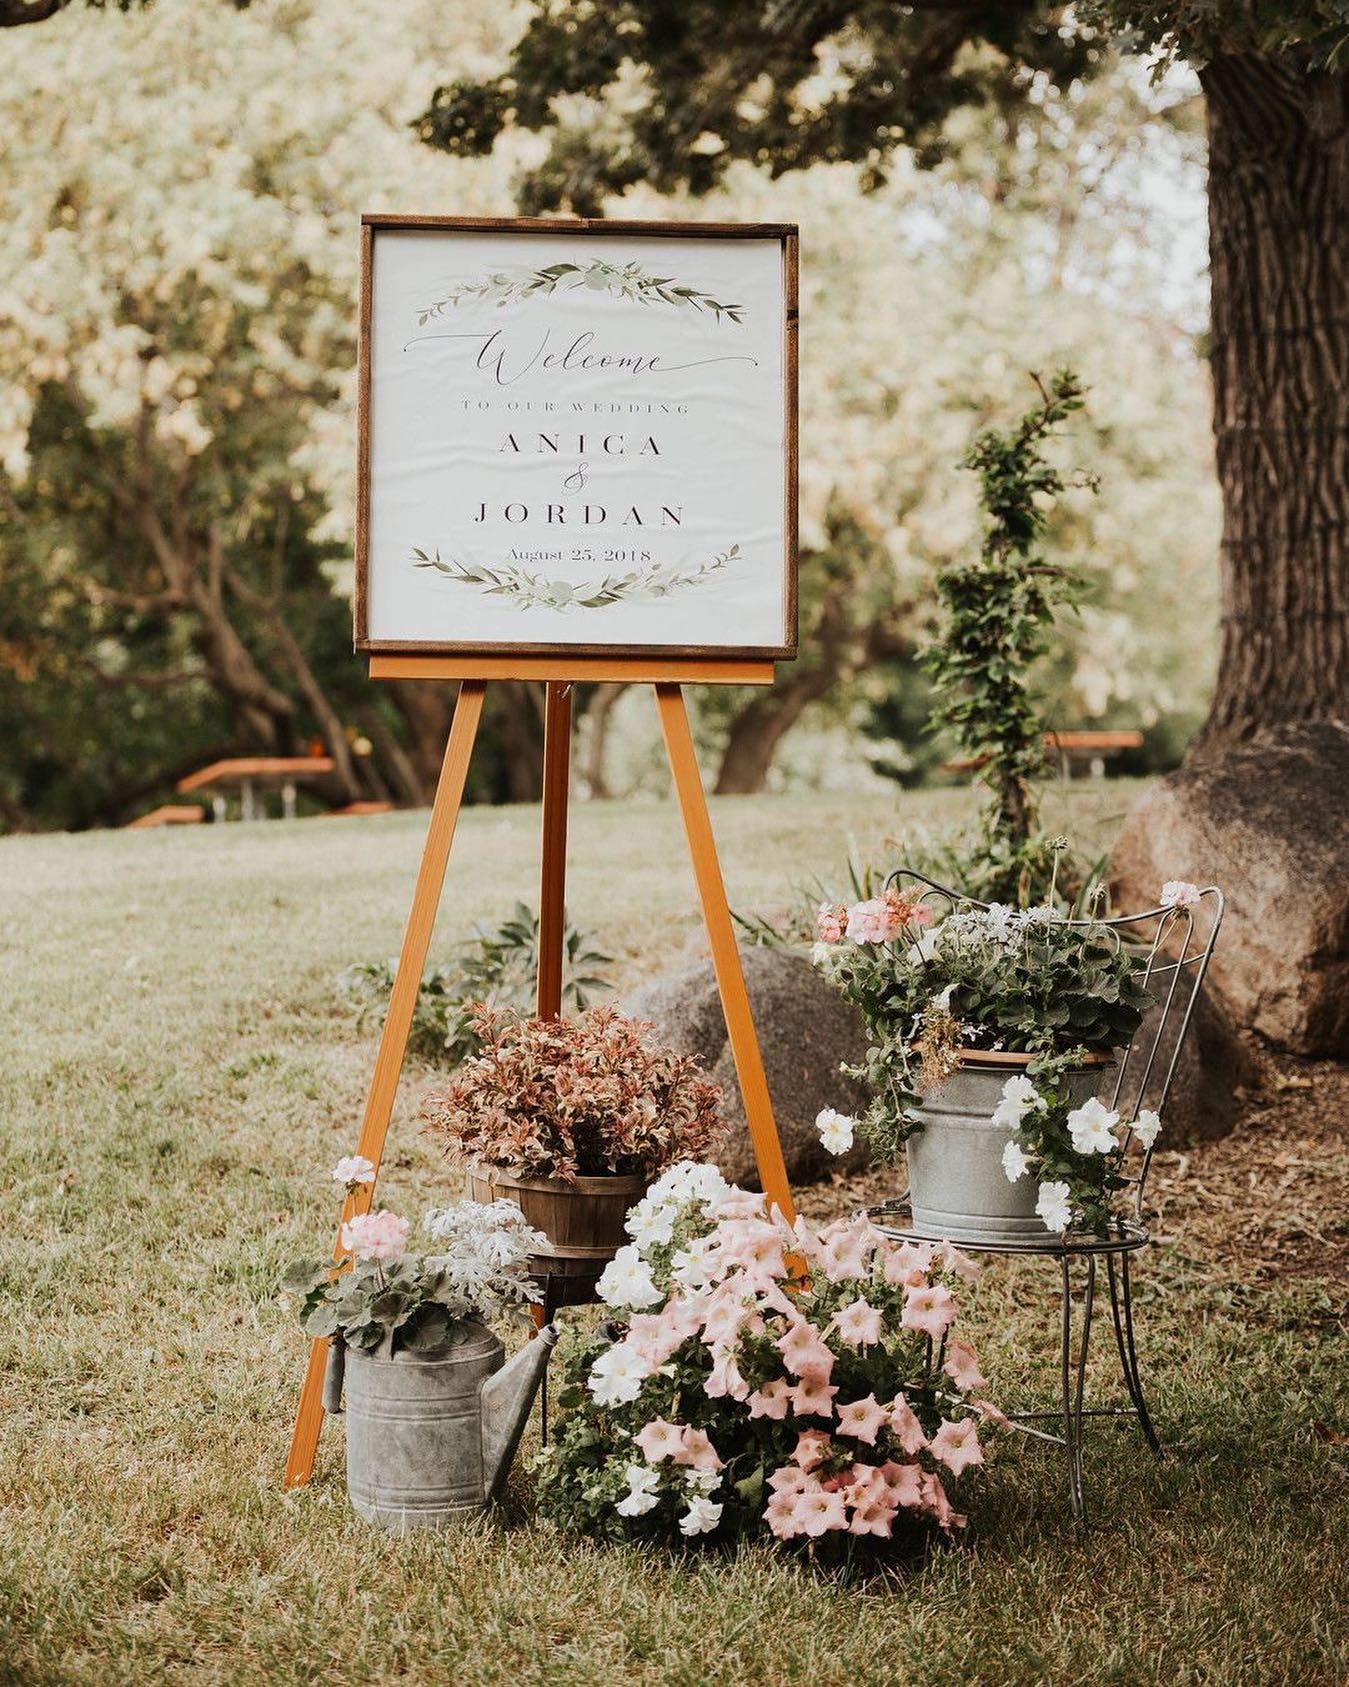 flower display around wedding sign